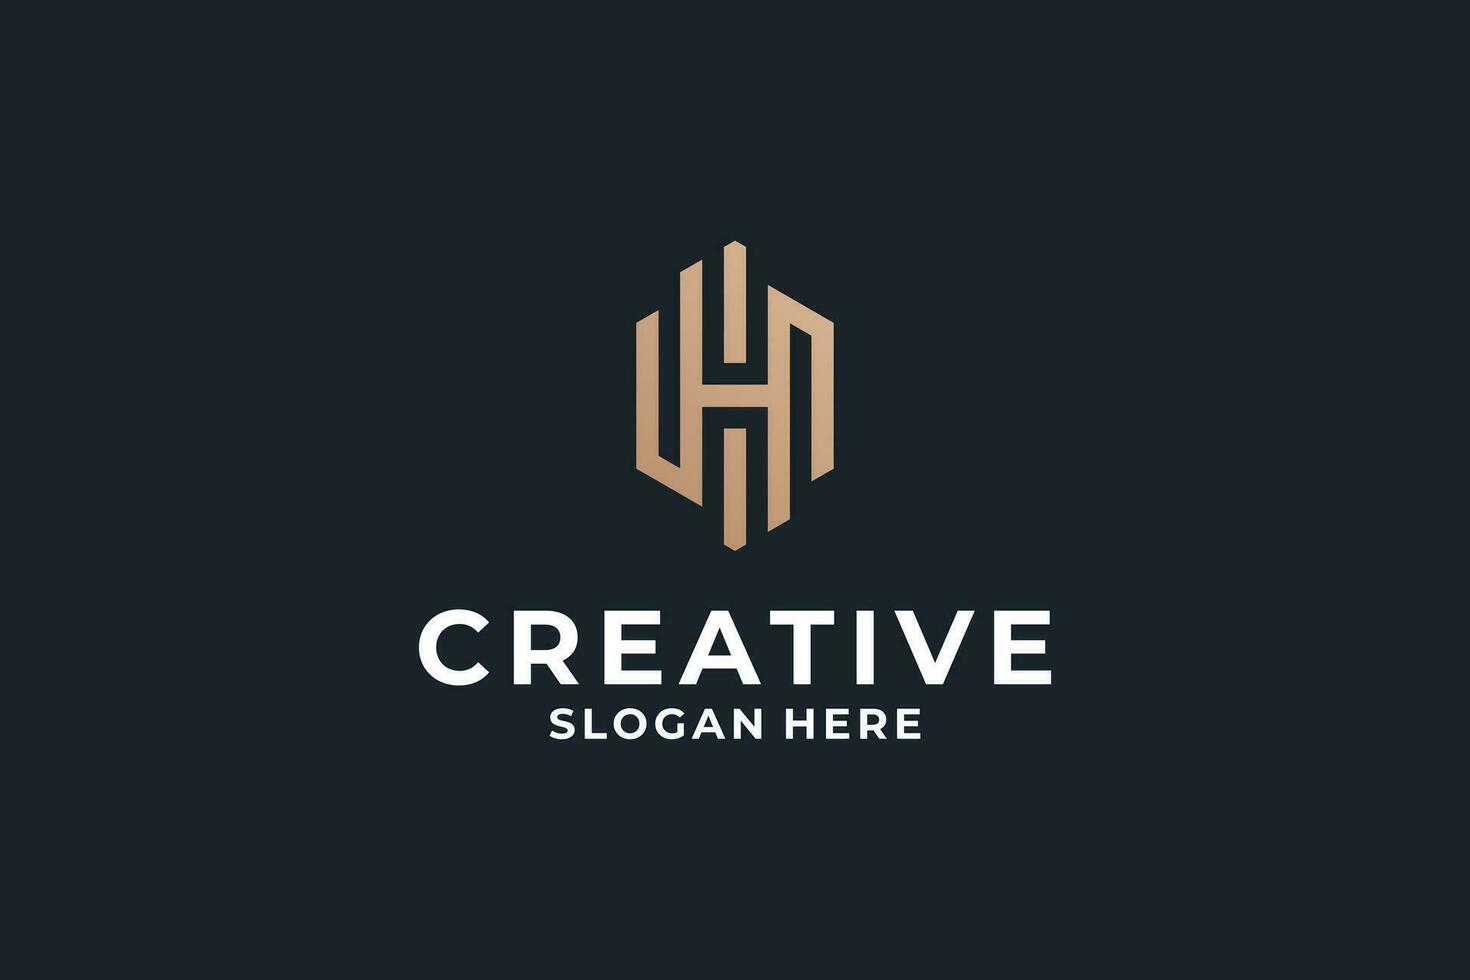 Brief h Logo Design kombinieren mit kreativ Hexagon Form. vektor